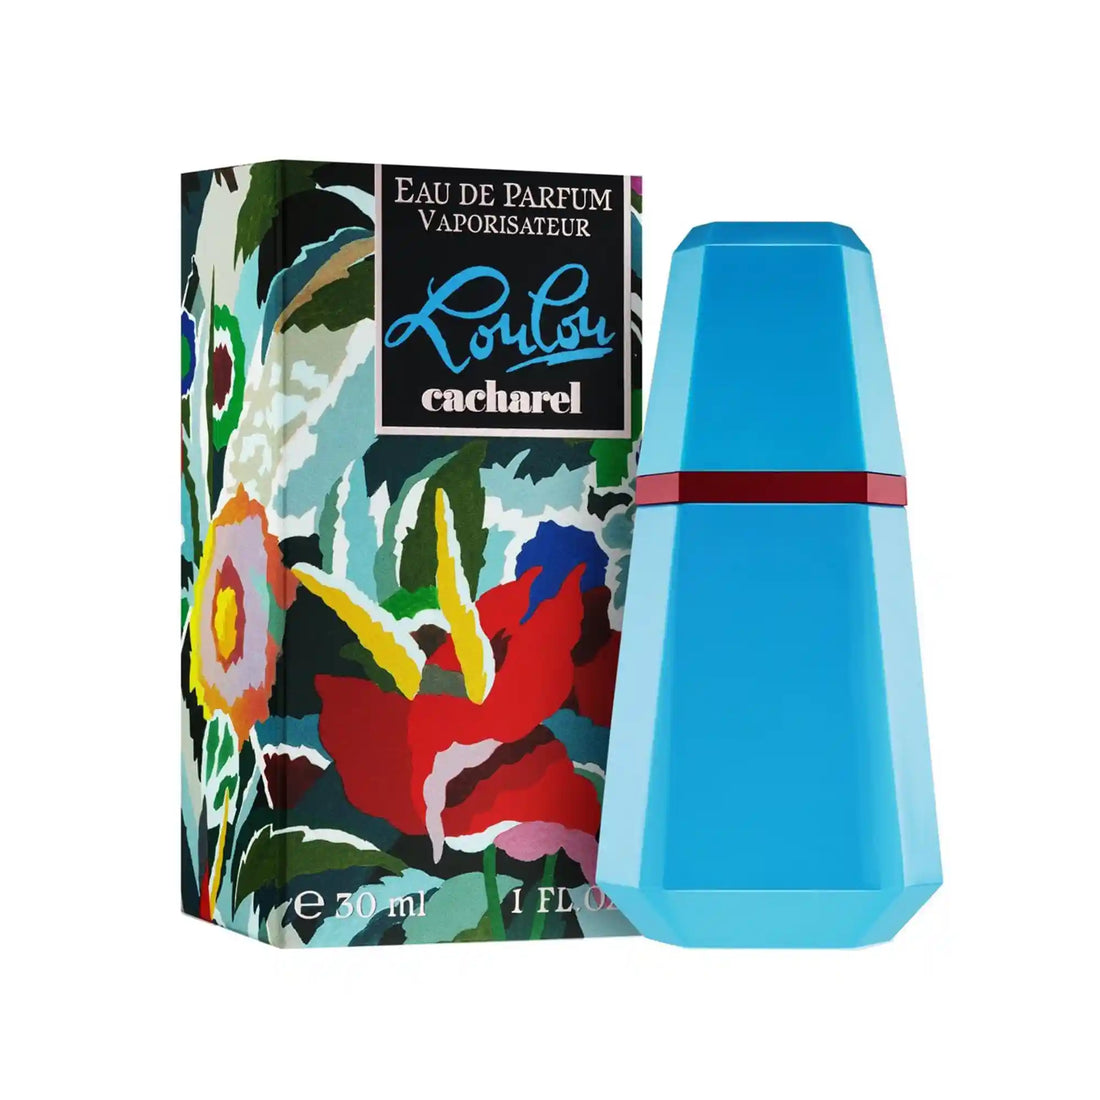 Cacharel Loulou Eau de Parfum 50ml Packaging